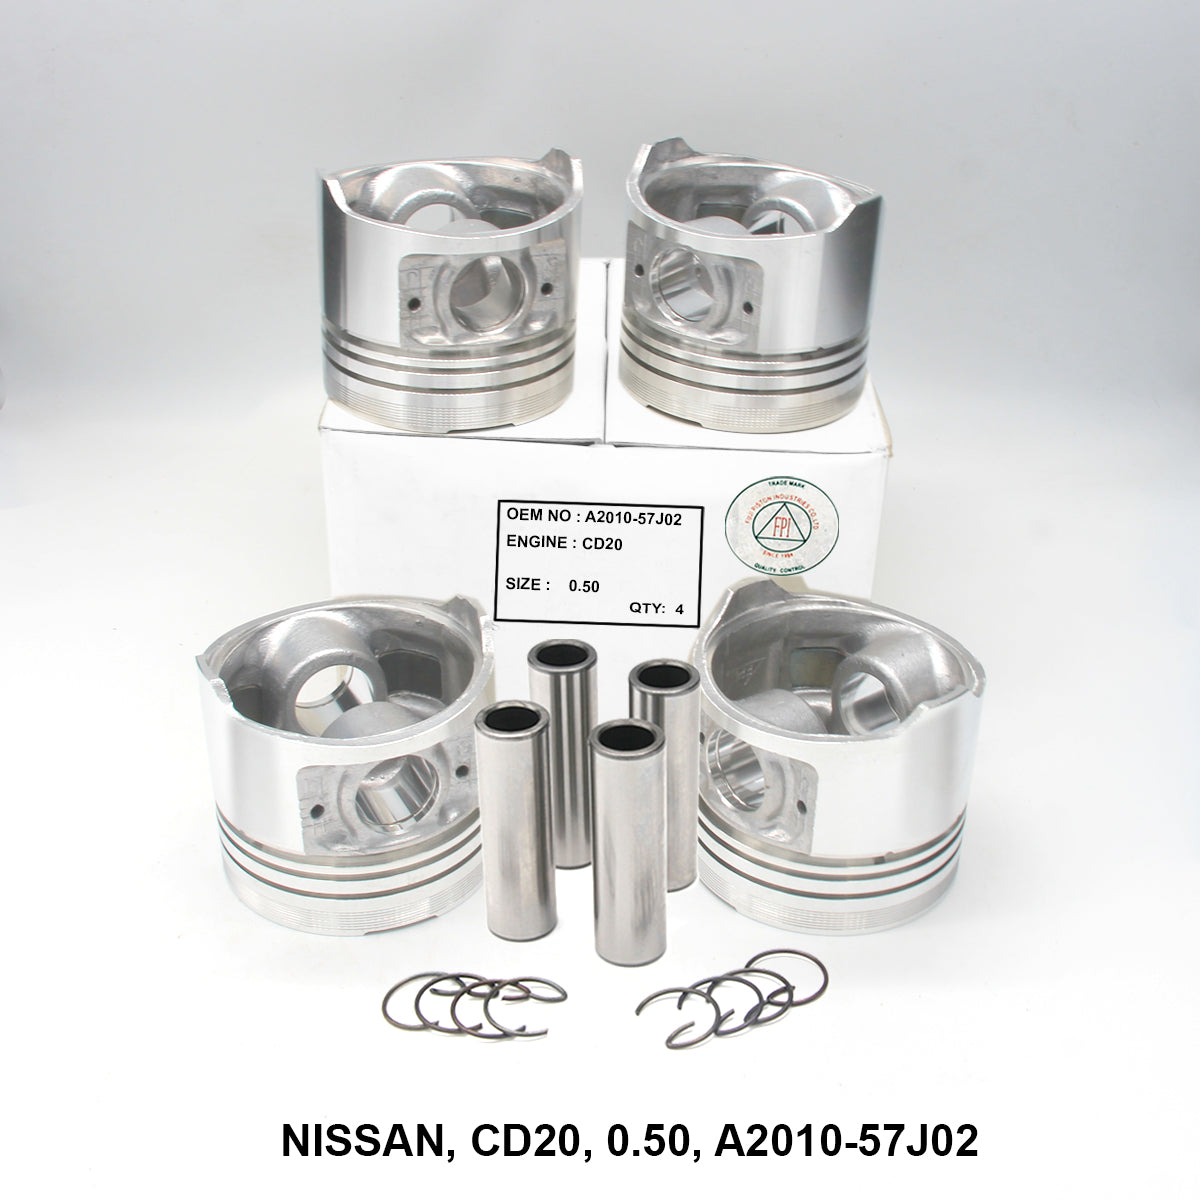 Piston W/Pin, FPI, CD20, 0.50, A2010-57J02 (001652)